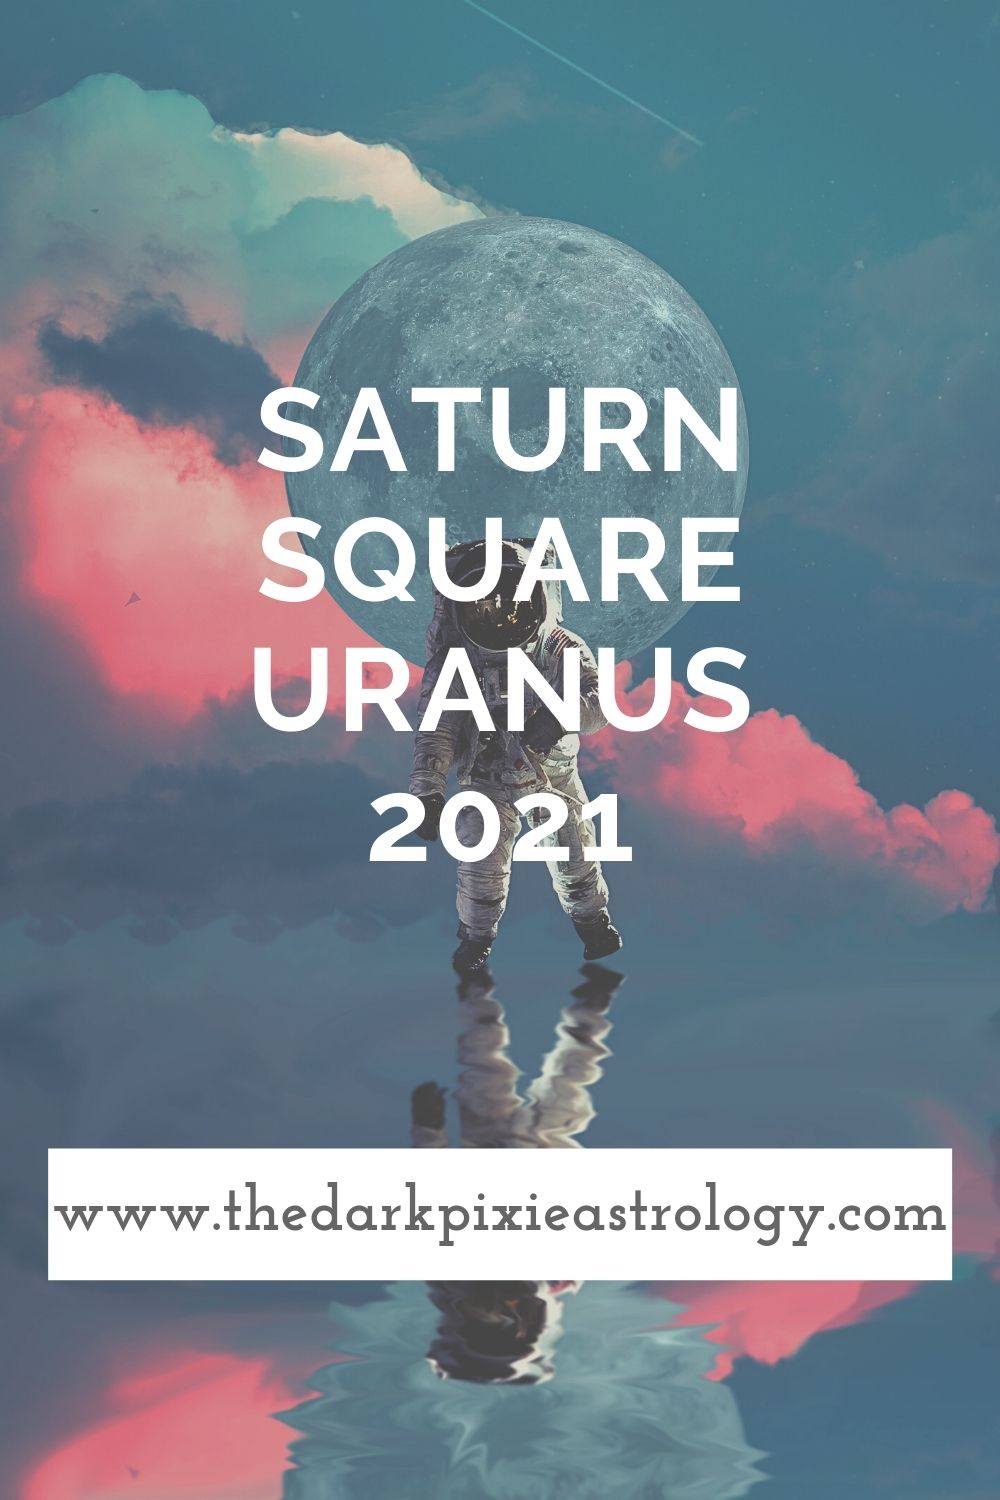 Saturn Square Uranus 2021 - The Dark Pixie Astrology